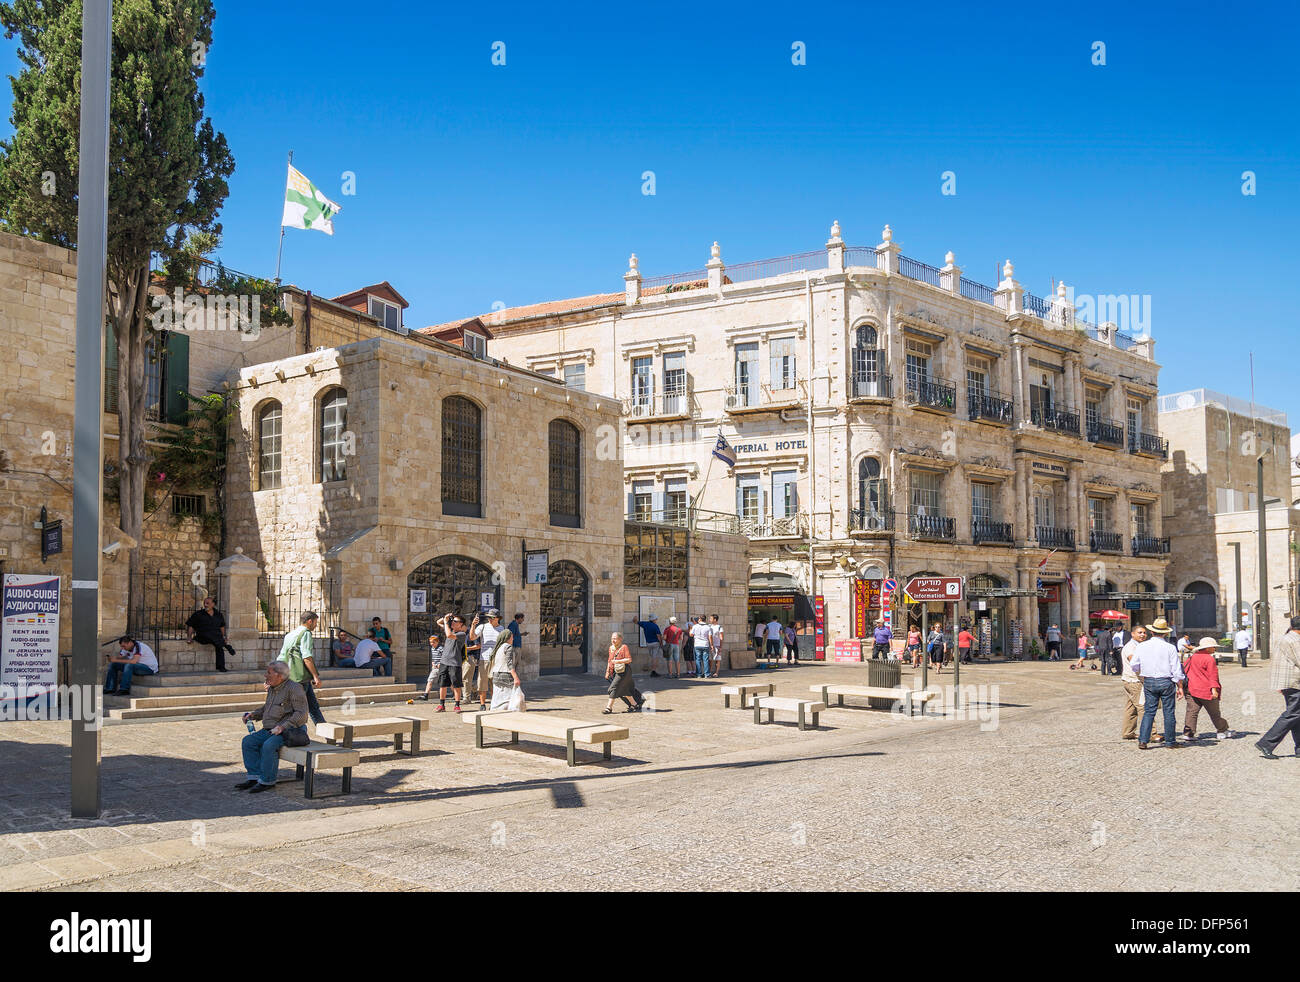 Plaza en la ciudad vieja de Jerusalén en Israel Foto de stock